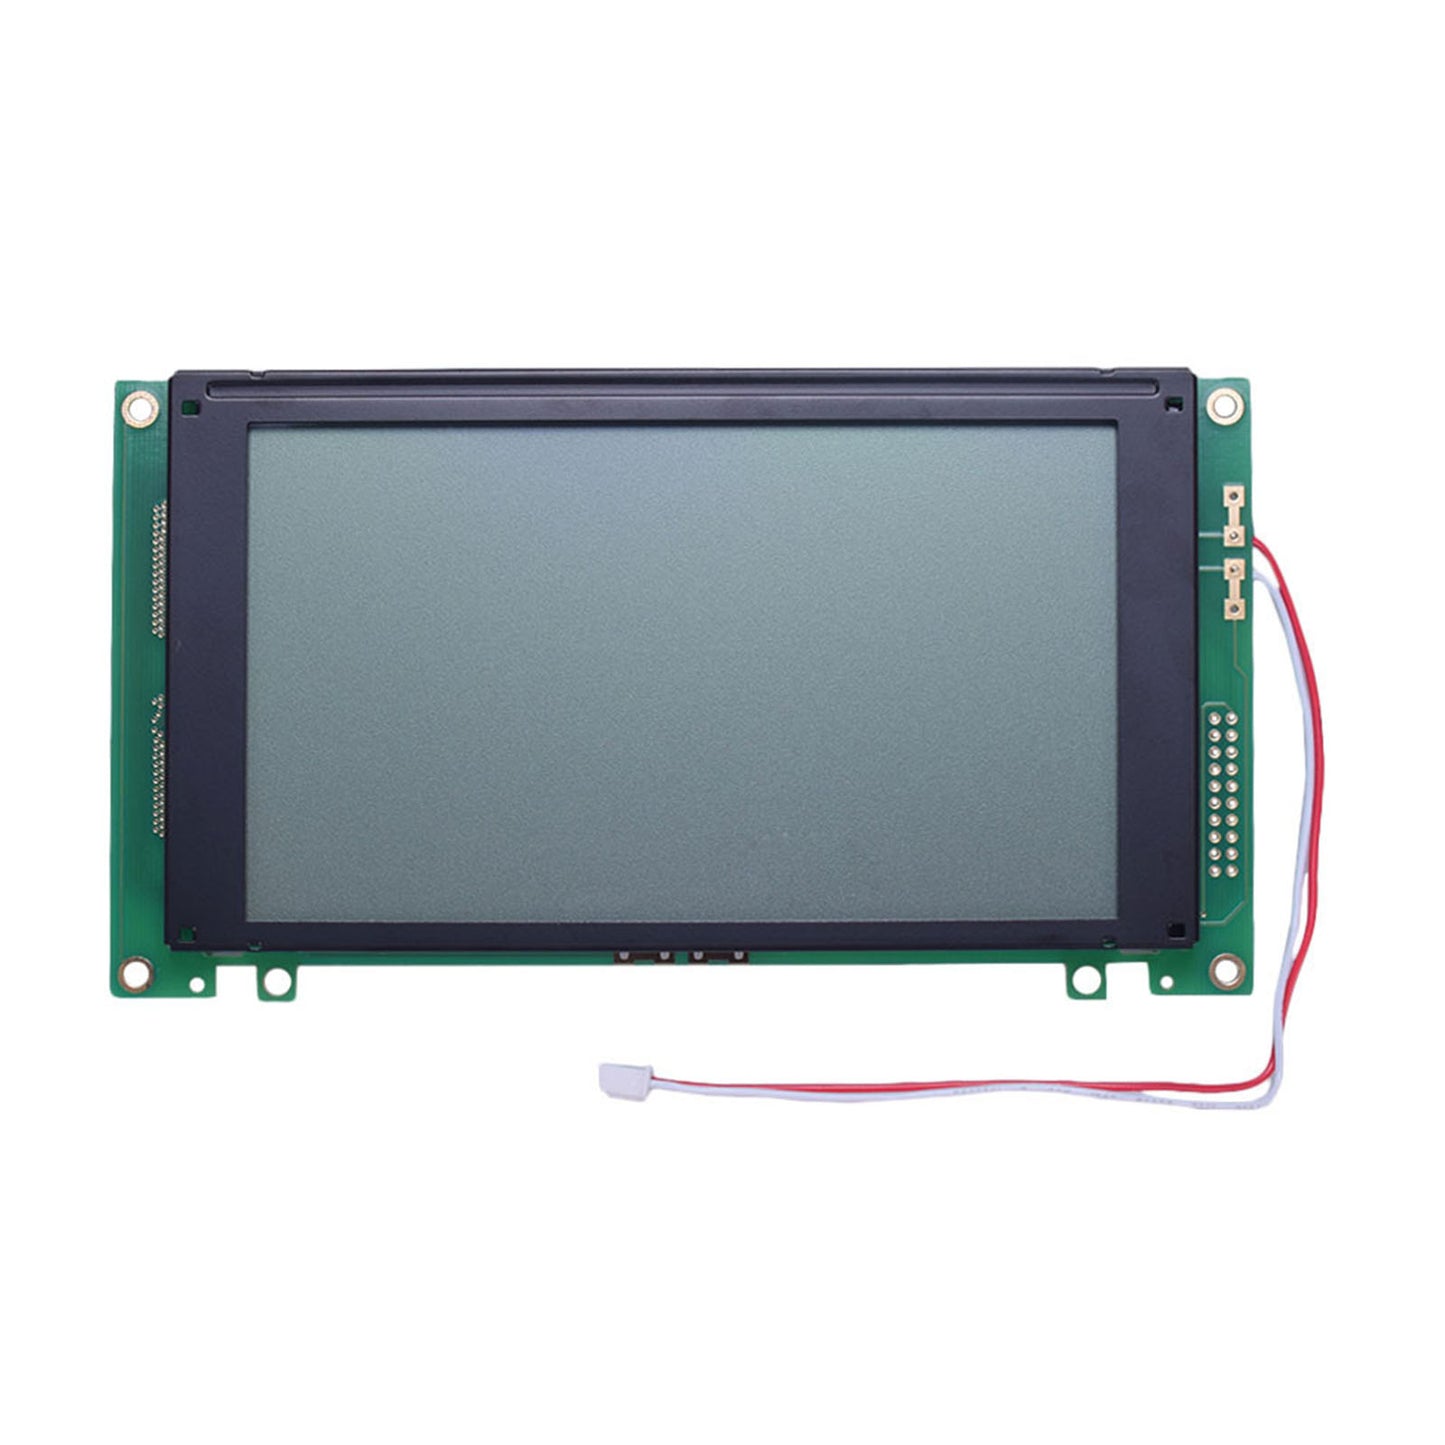 DisplayModule 5.15" 240x128 Large Graphic LCD - MCU